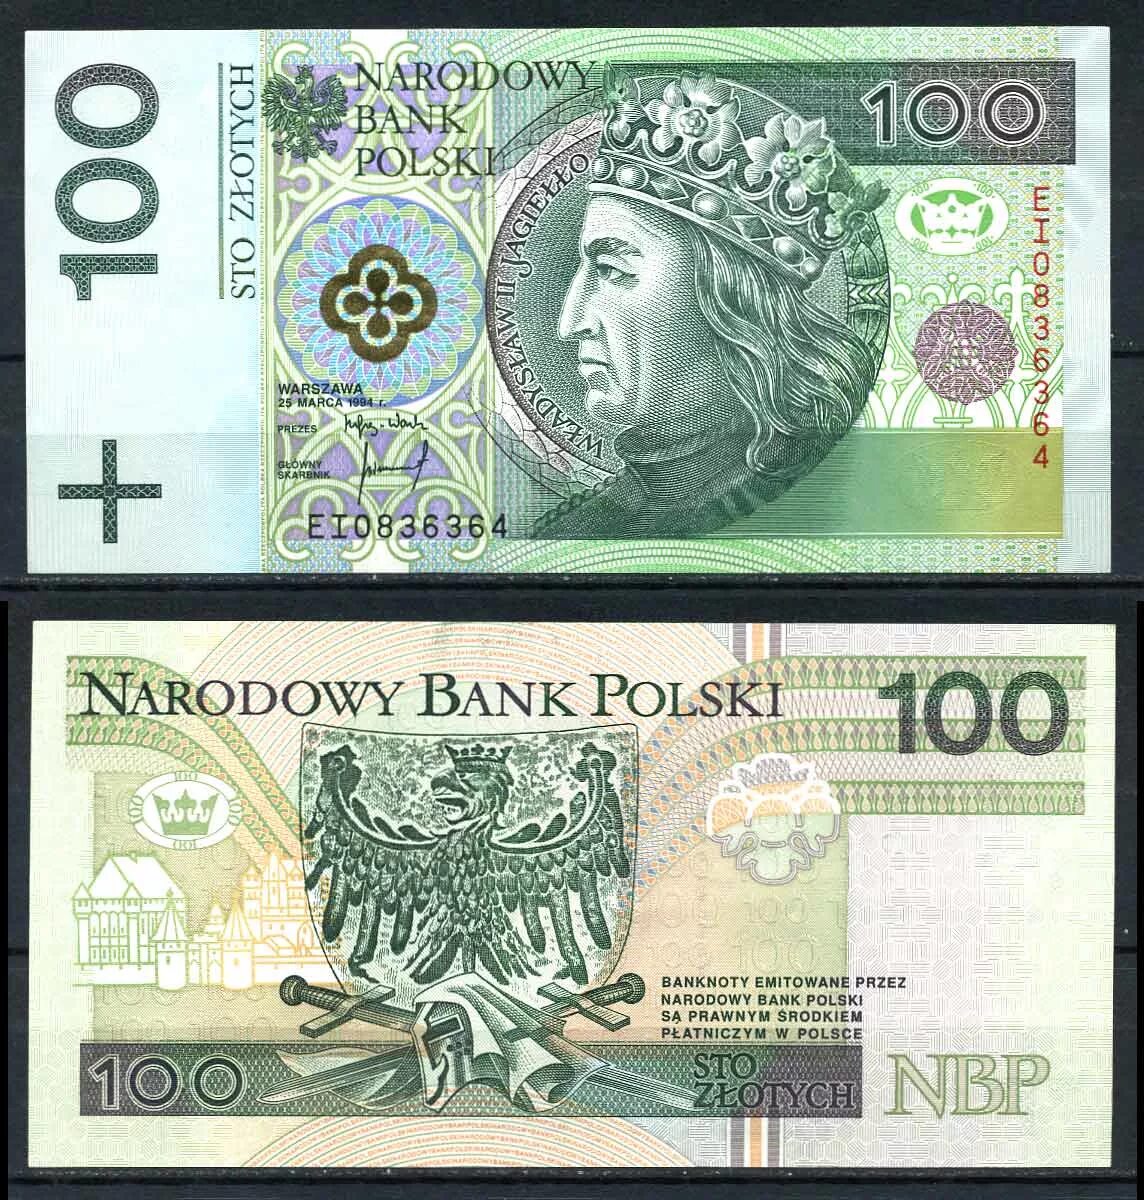 Польская денежная единица. 100 Злотых 1994г. 100 Злотых купюра 1994. Польский злотый банкноты. 200 Zlotych.